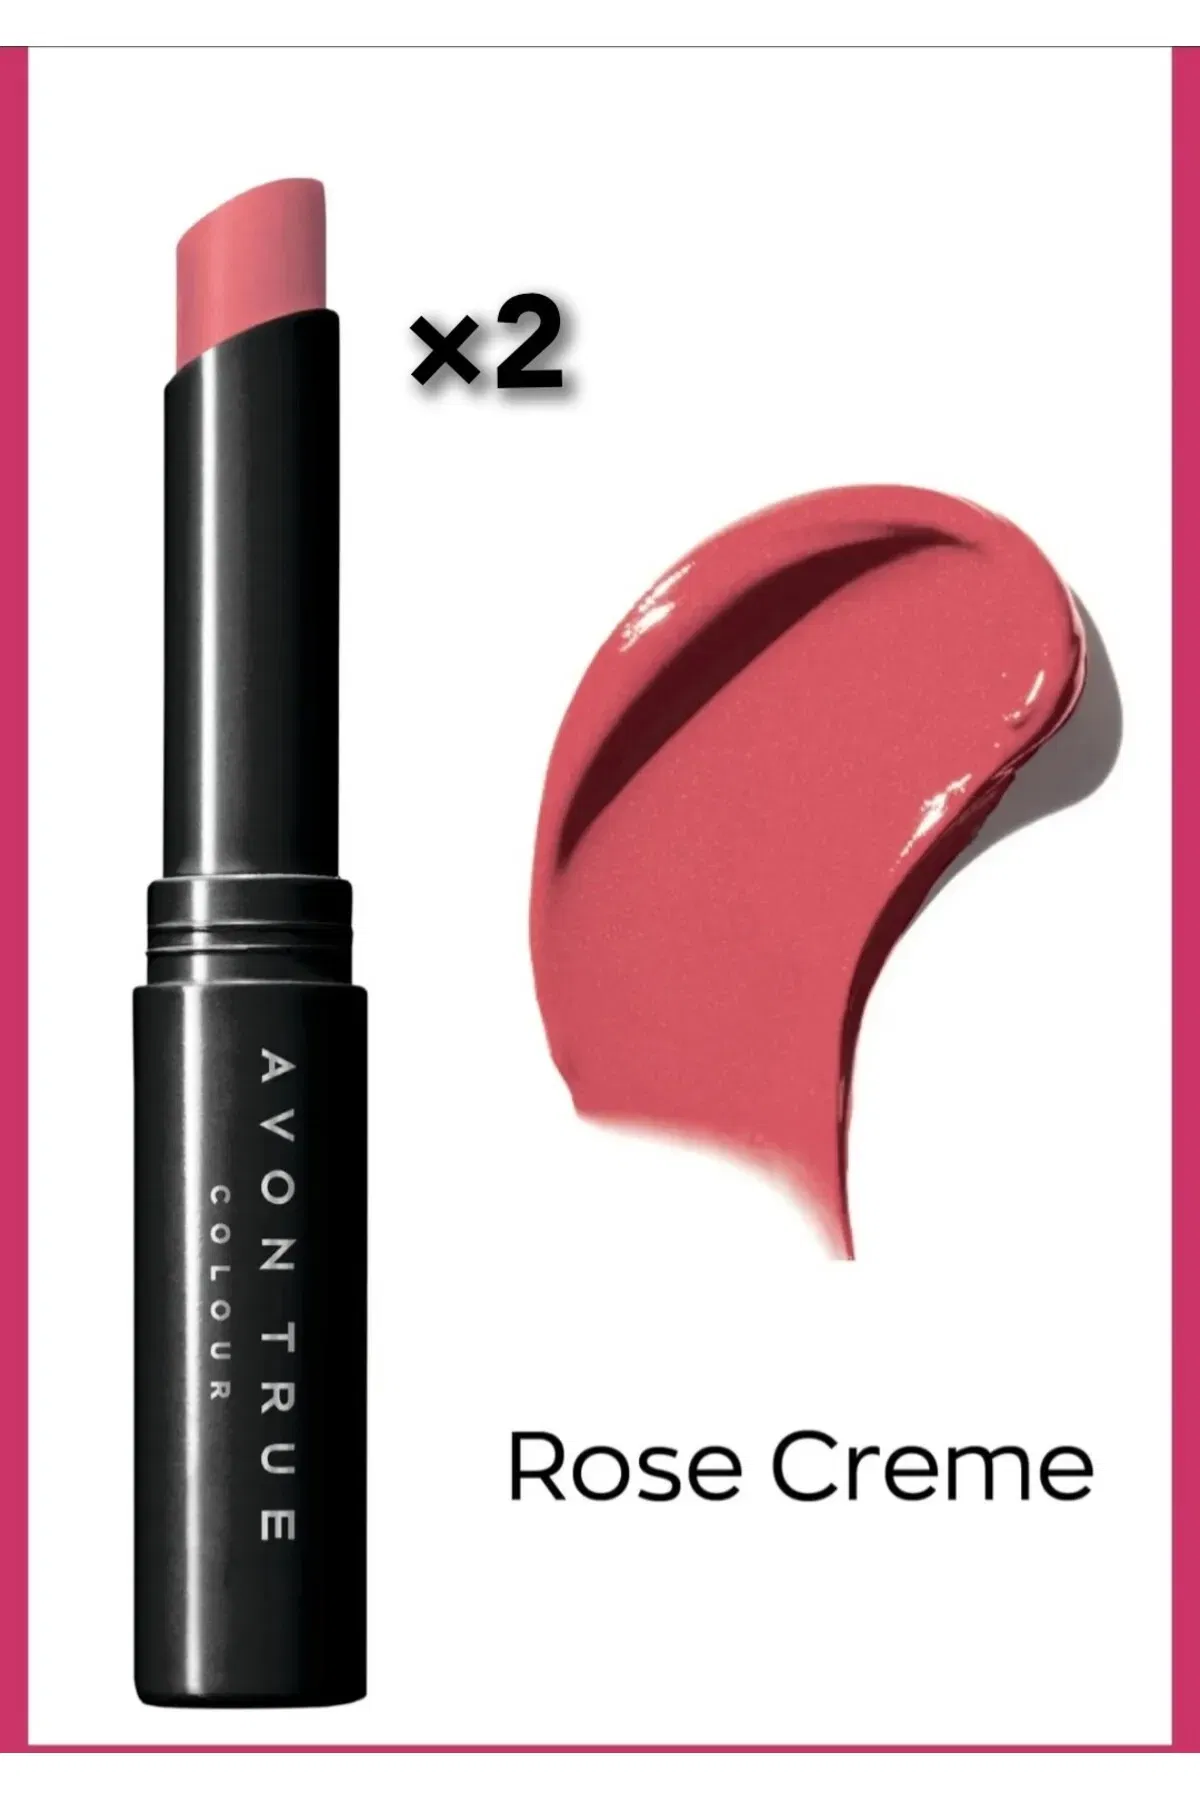 Avon Ultra Beauty Stik Ruj Rose Creme İncelemesi kapak resmi